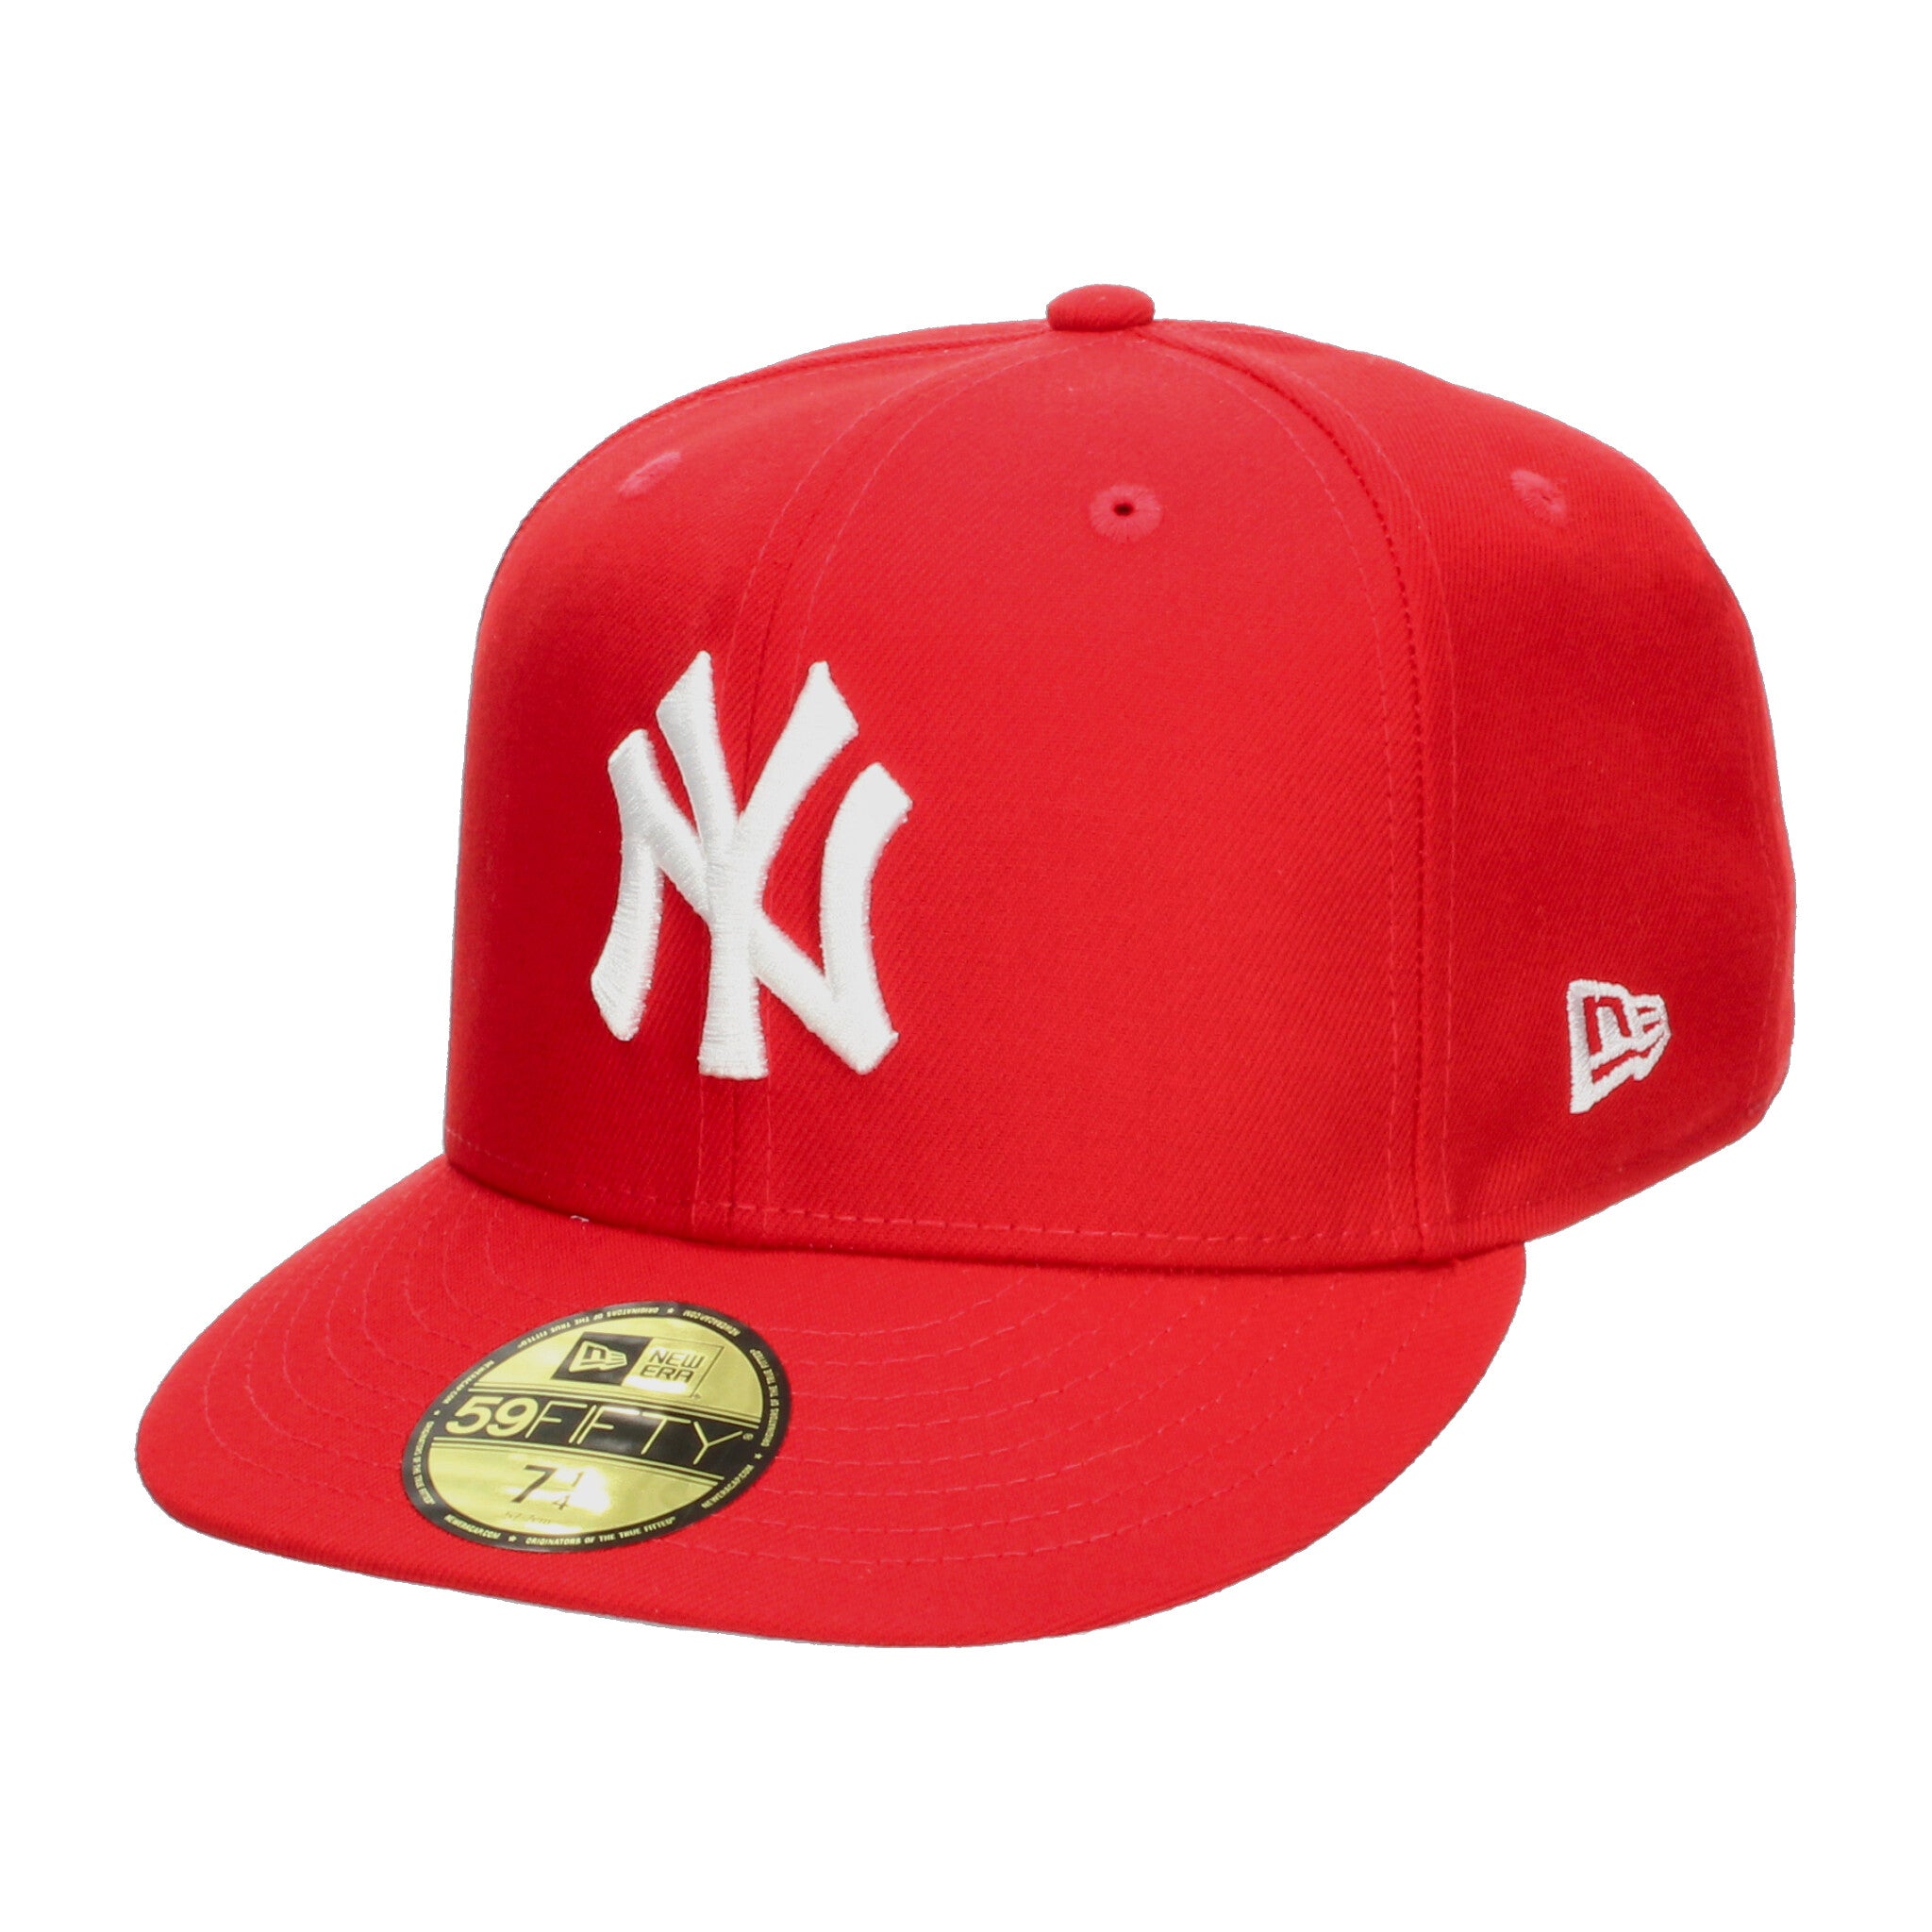 Gorra New Era Yankees Rojo [NWR46] NEW ERA 